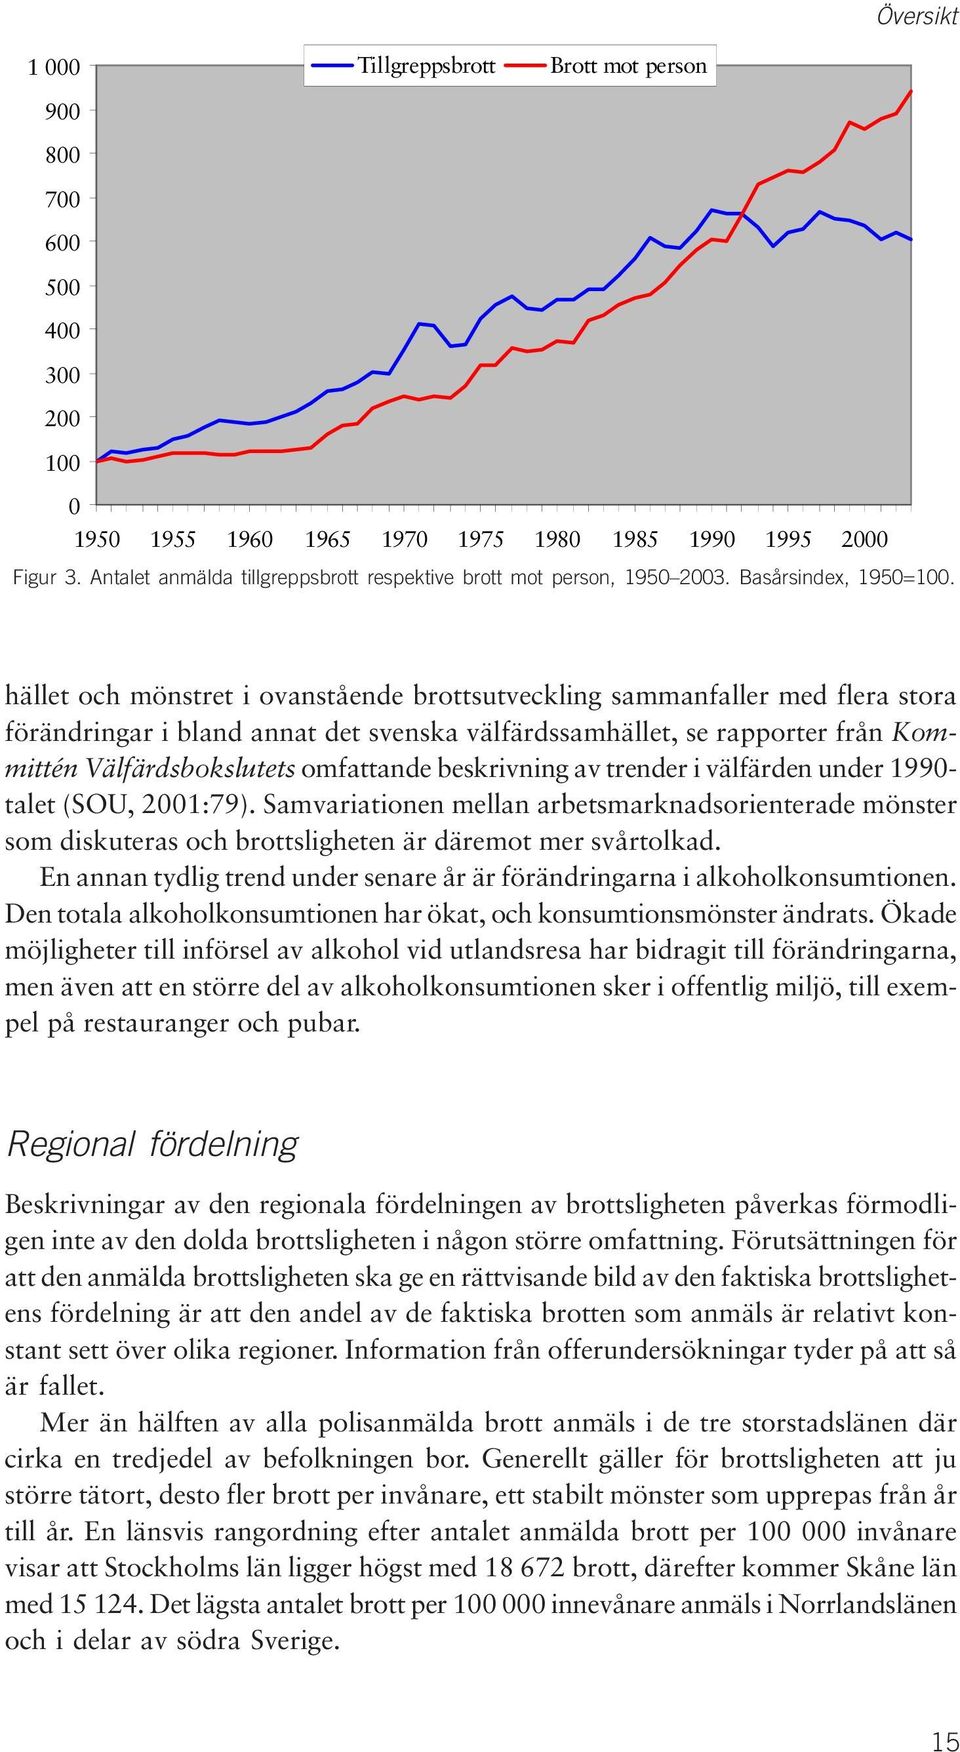 hället och mönstret i ovanstående brottsutveckling sammanfaller med flera stora förändringar i bland annat det svenska välfärdssamhället, se rapporter från Kommittén Välfärdsbokslutets omfattande